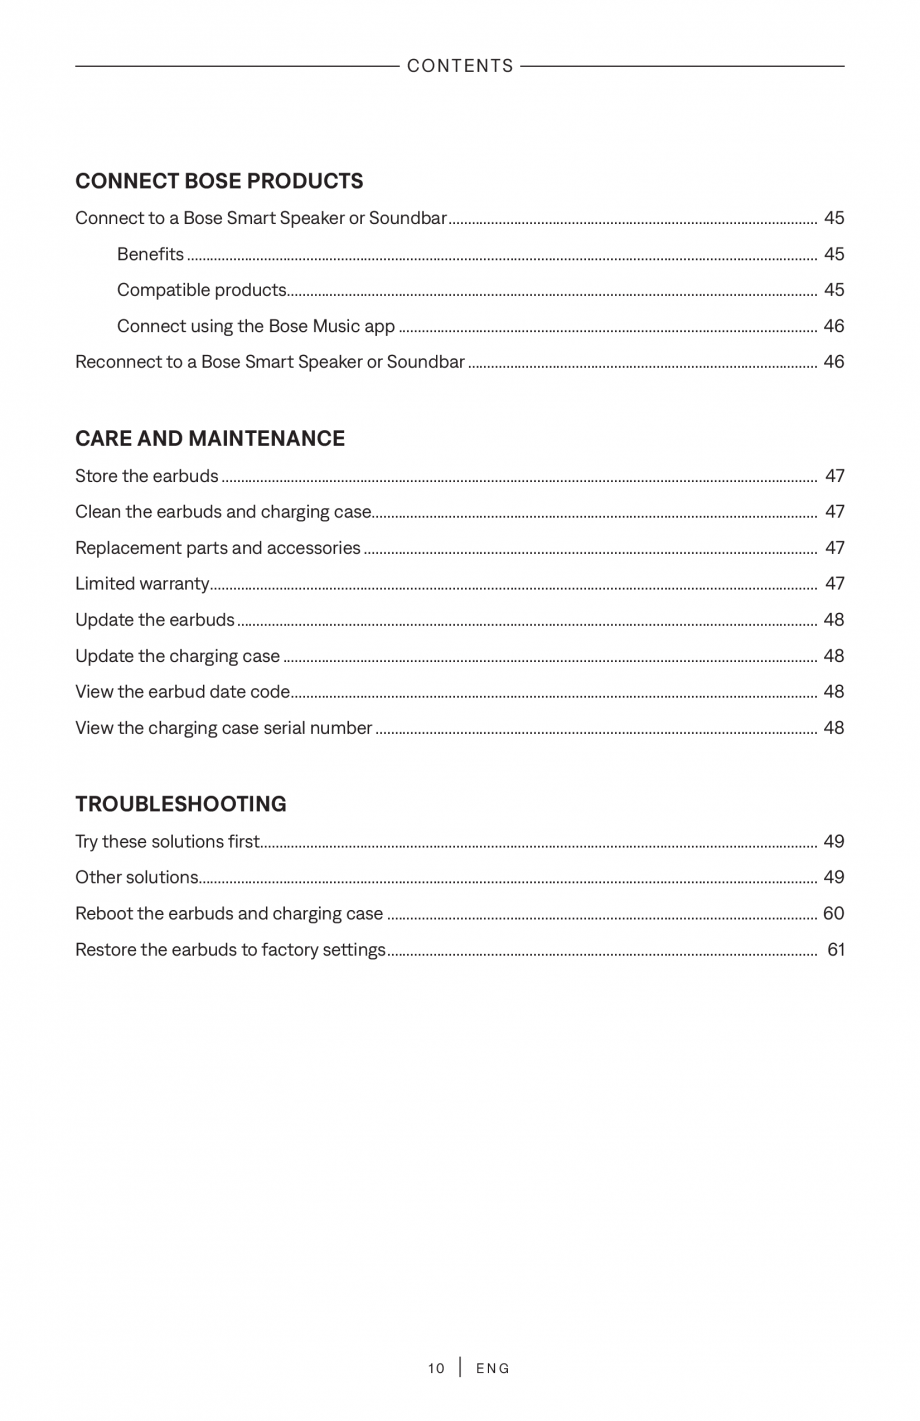 Pagina 10 - Manual de utilizare pentru casti true wireless cu anularea zgomotului BOSE QuietComfort ...